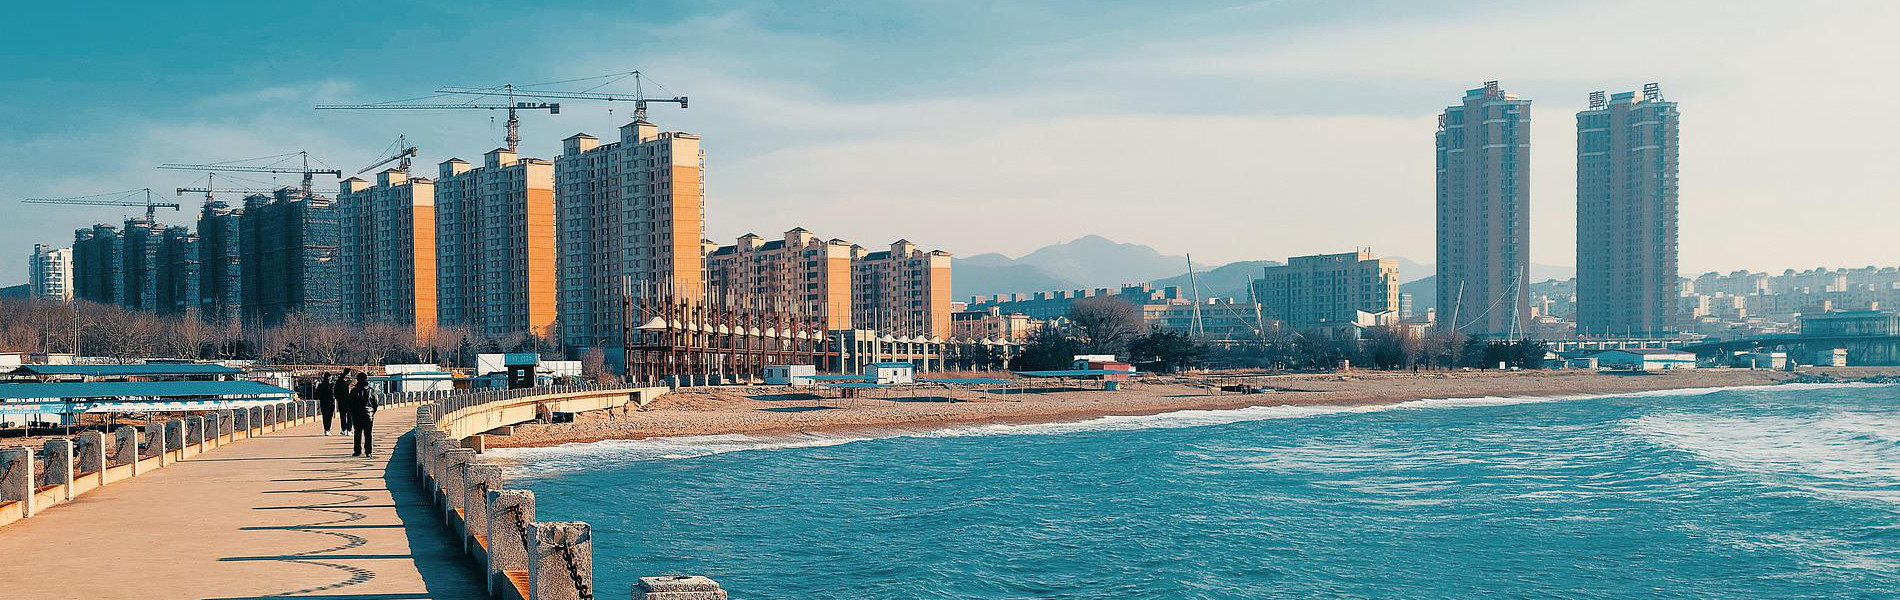 中国大連市海岸イメージ